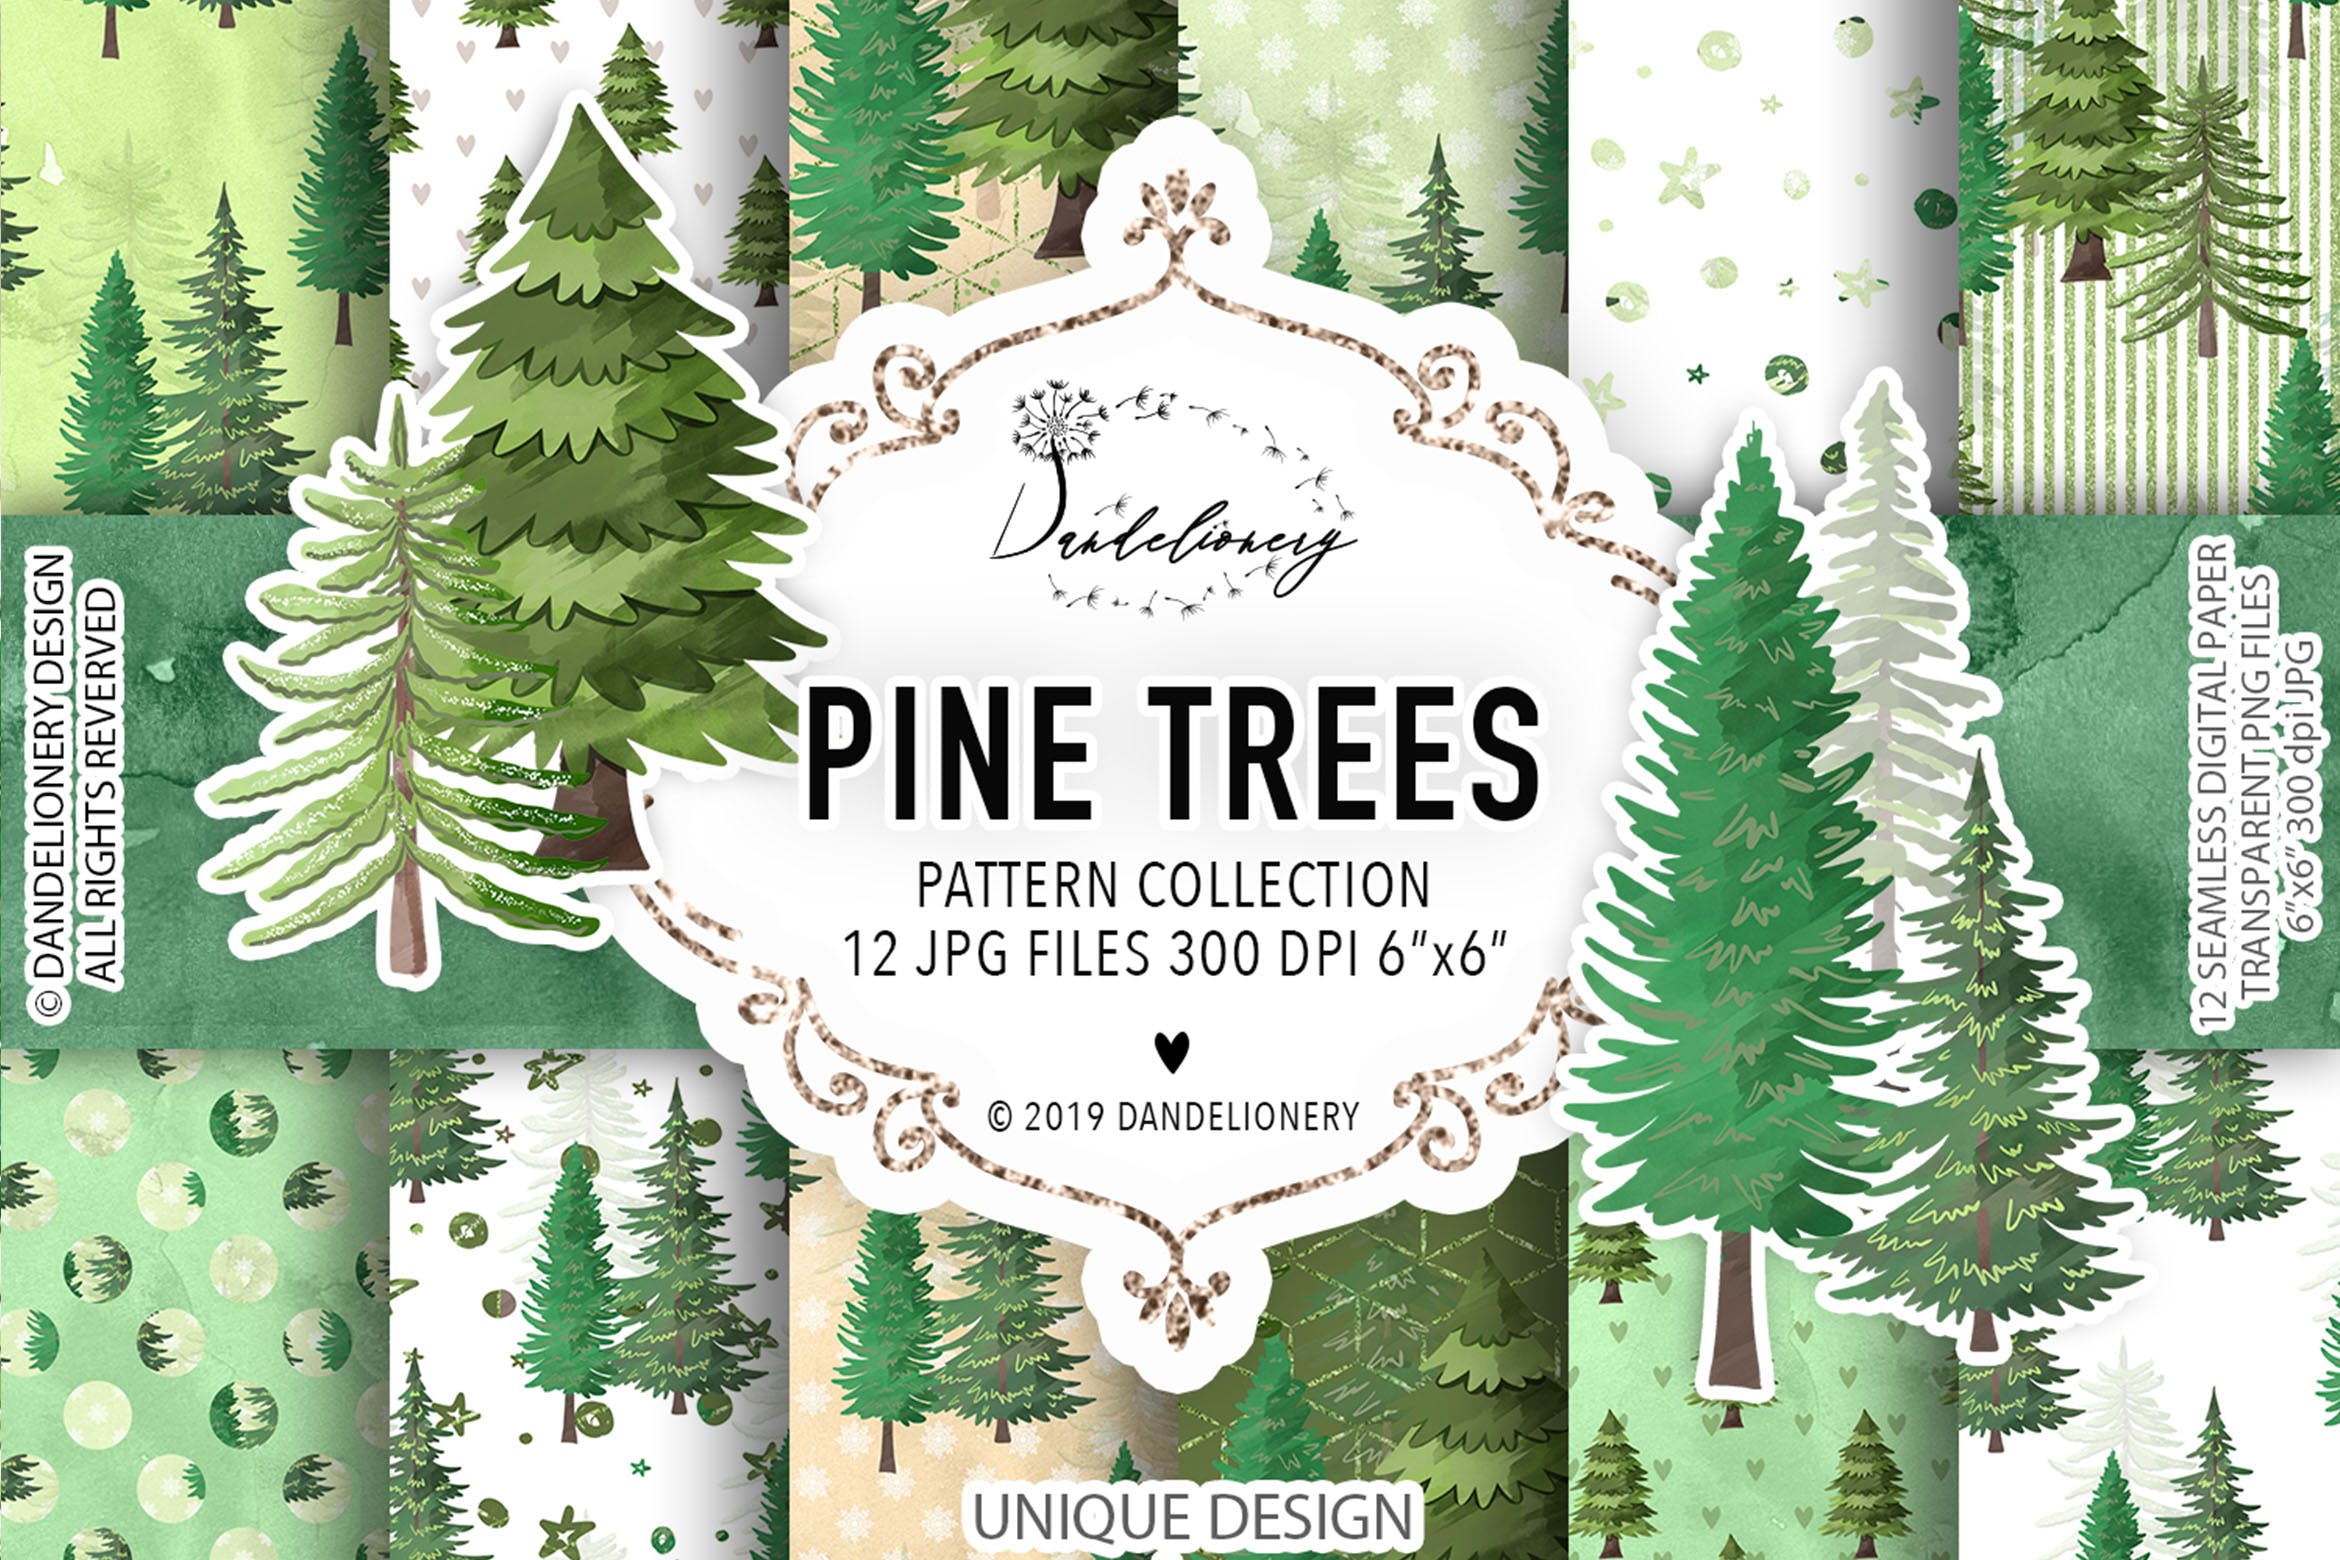 松树水彩手绘图案数码纸张设计素材 Pine trees digital paper pack插图